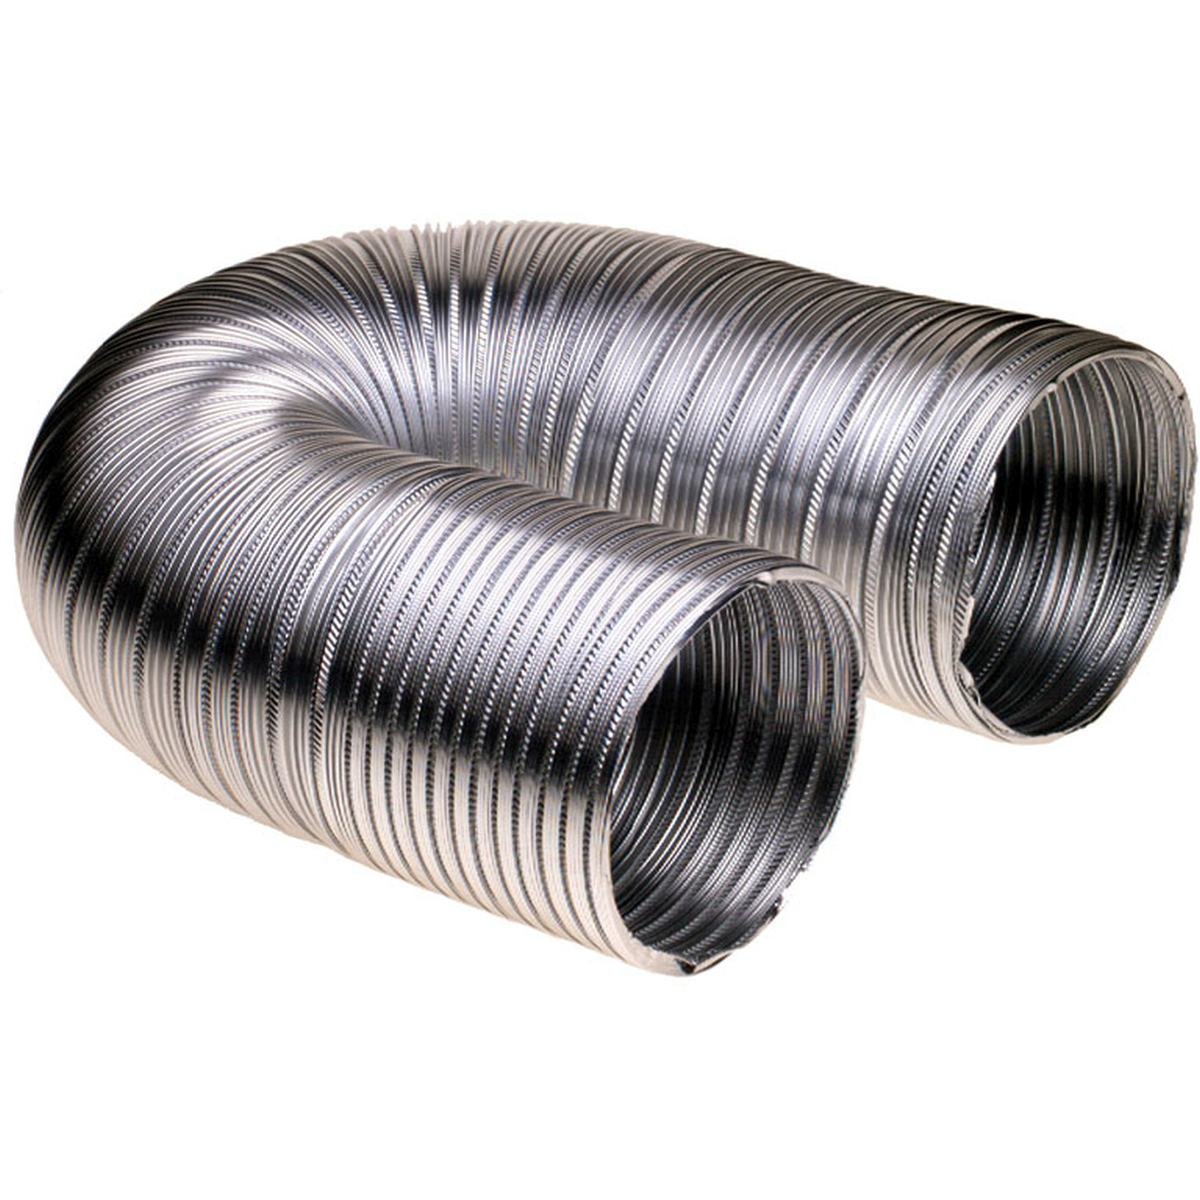 Ventilasjonsslange i aluminium Ø152 mm. 3,0 meter